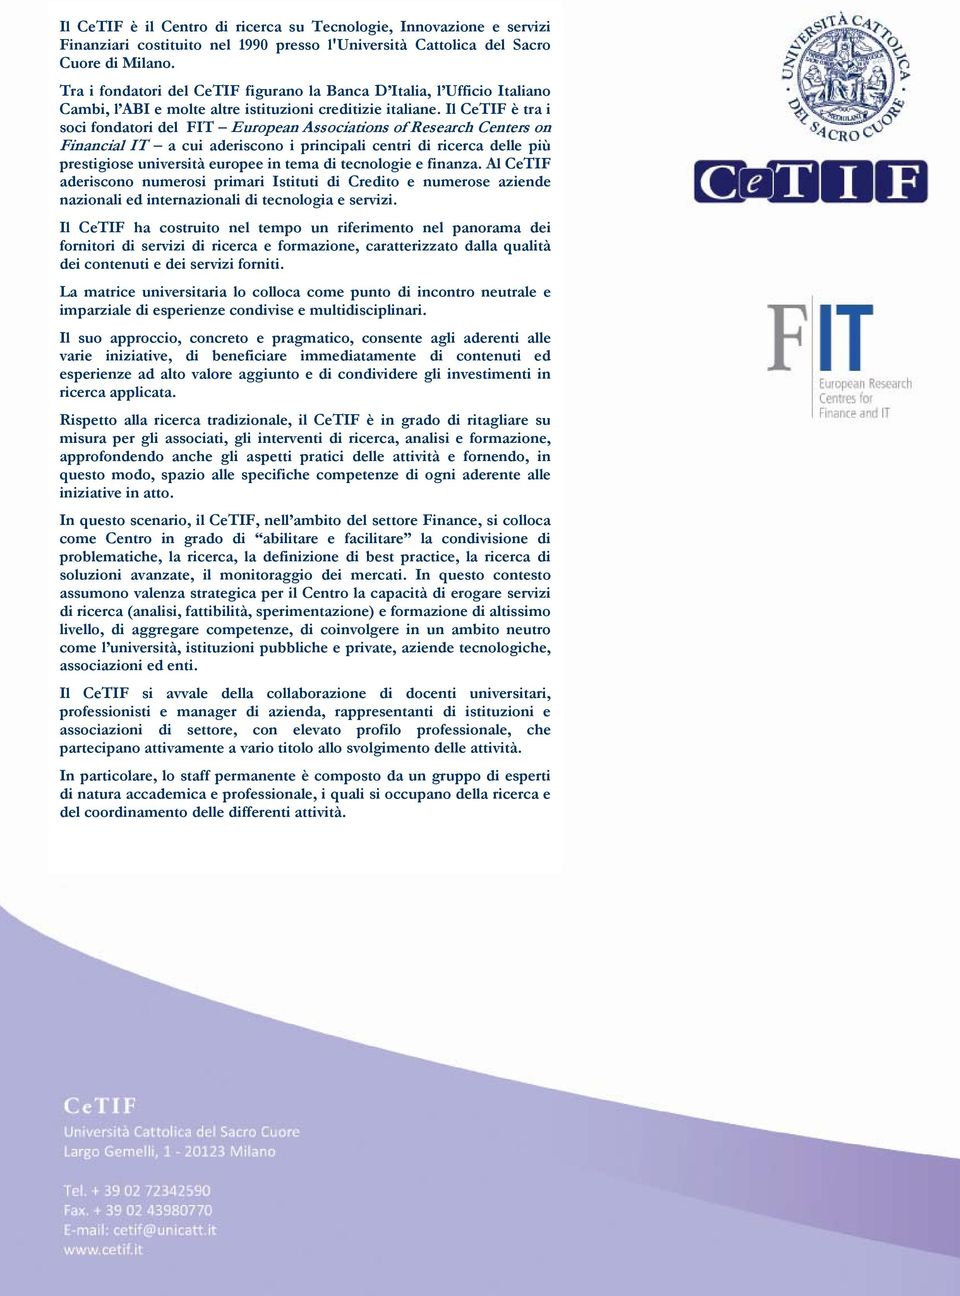 Il CeTIF è tra i soci fondatori del FIT European Associations of Research Centers on Financial IT a cui aderiscono i principali centri di ricerca delle più prestigiose università europee in tema di